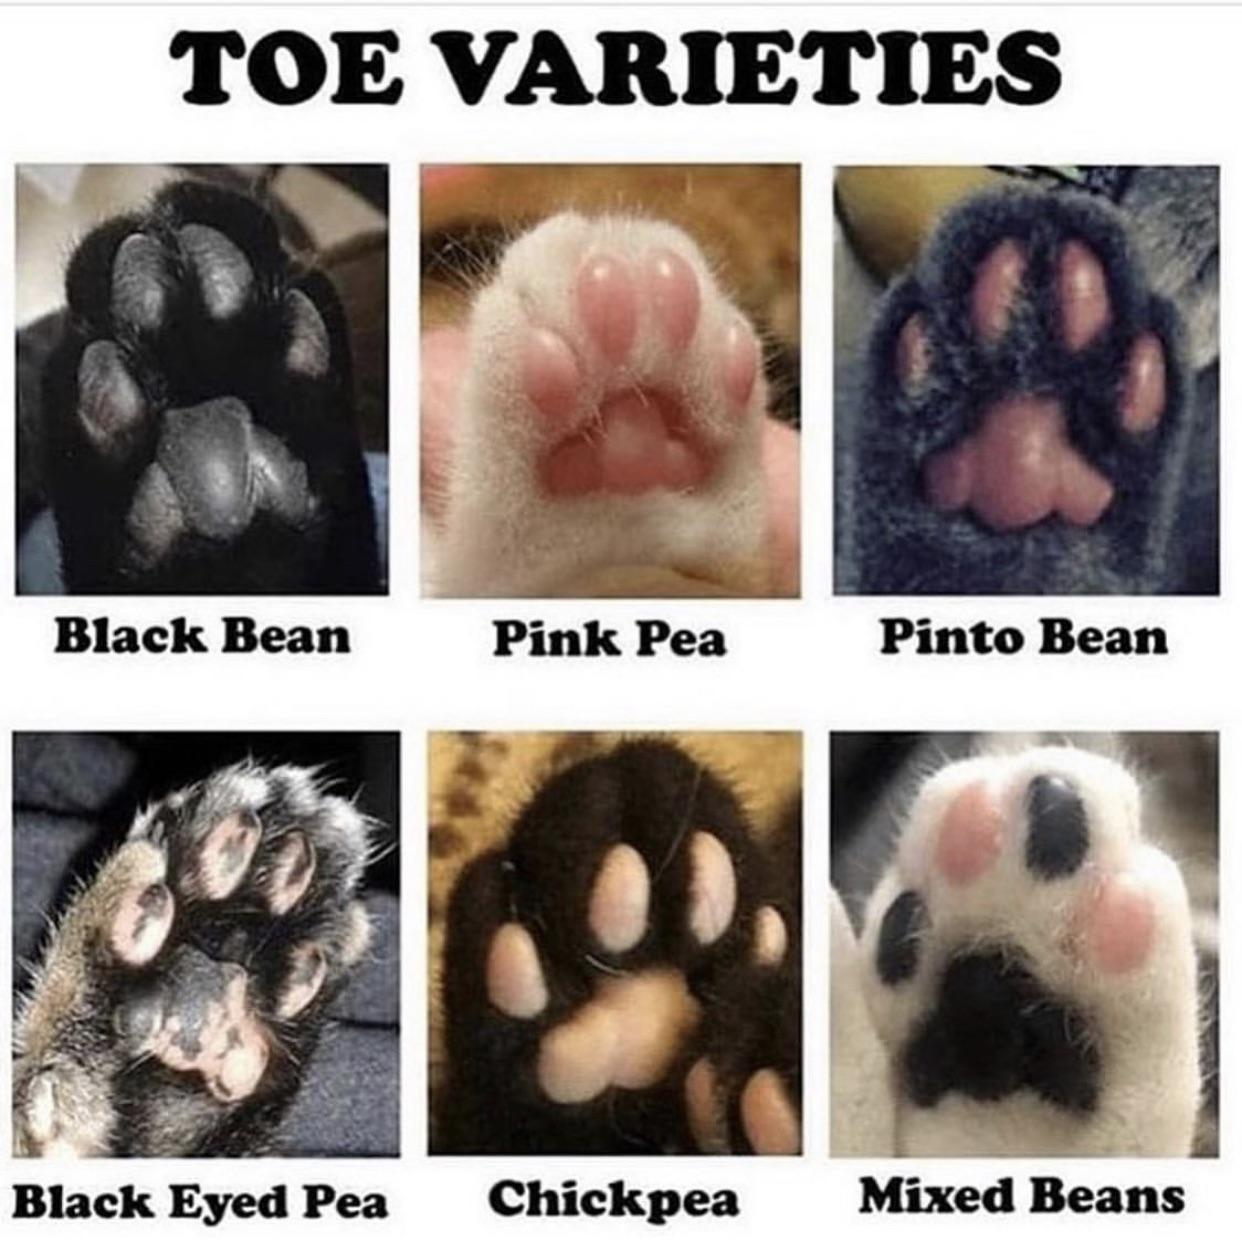 toe varieties - Toe Varieties Black Bean Pink Pea Pinto Bean Black Eyed Pea Chickpea Mixed Beans